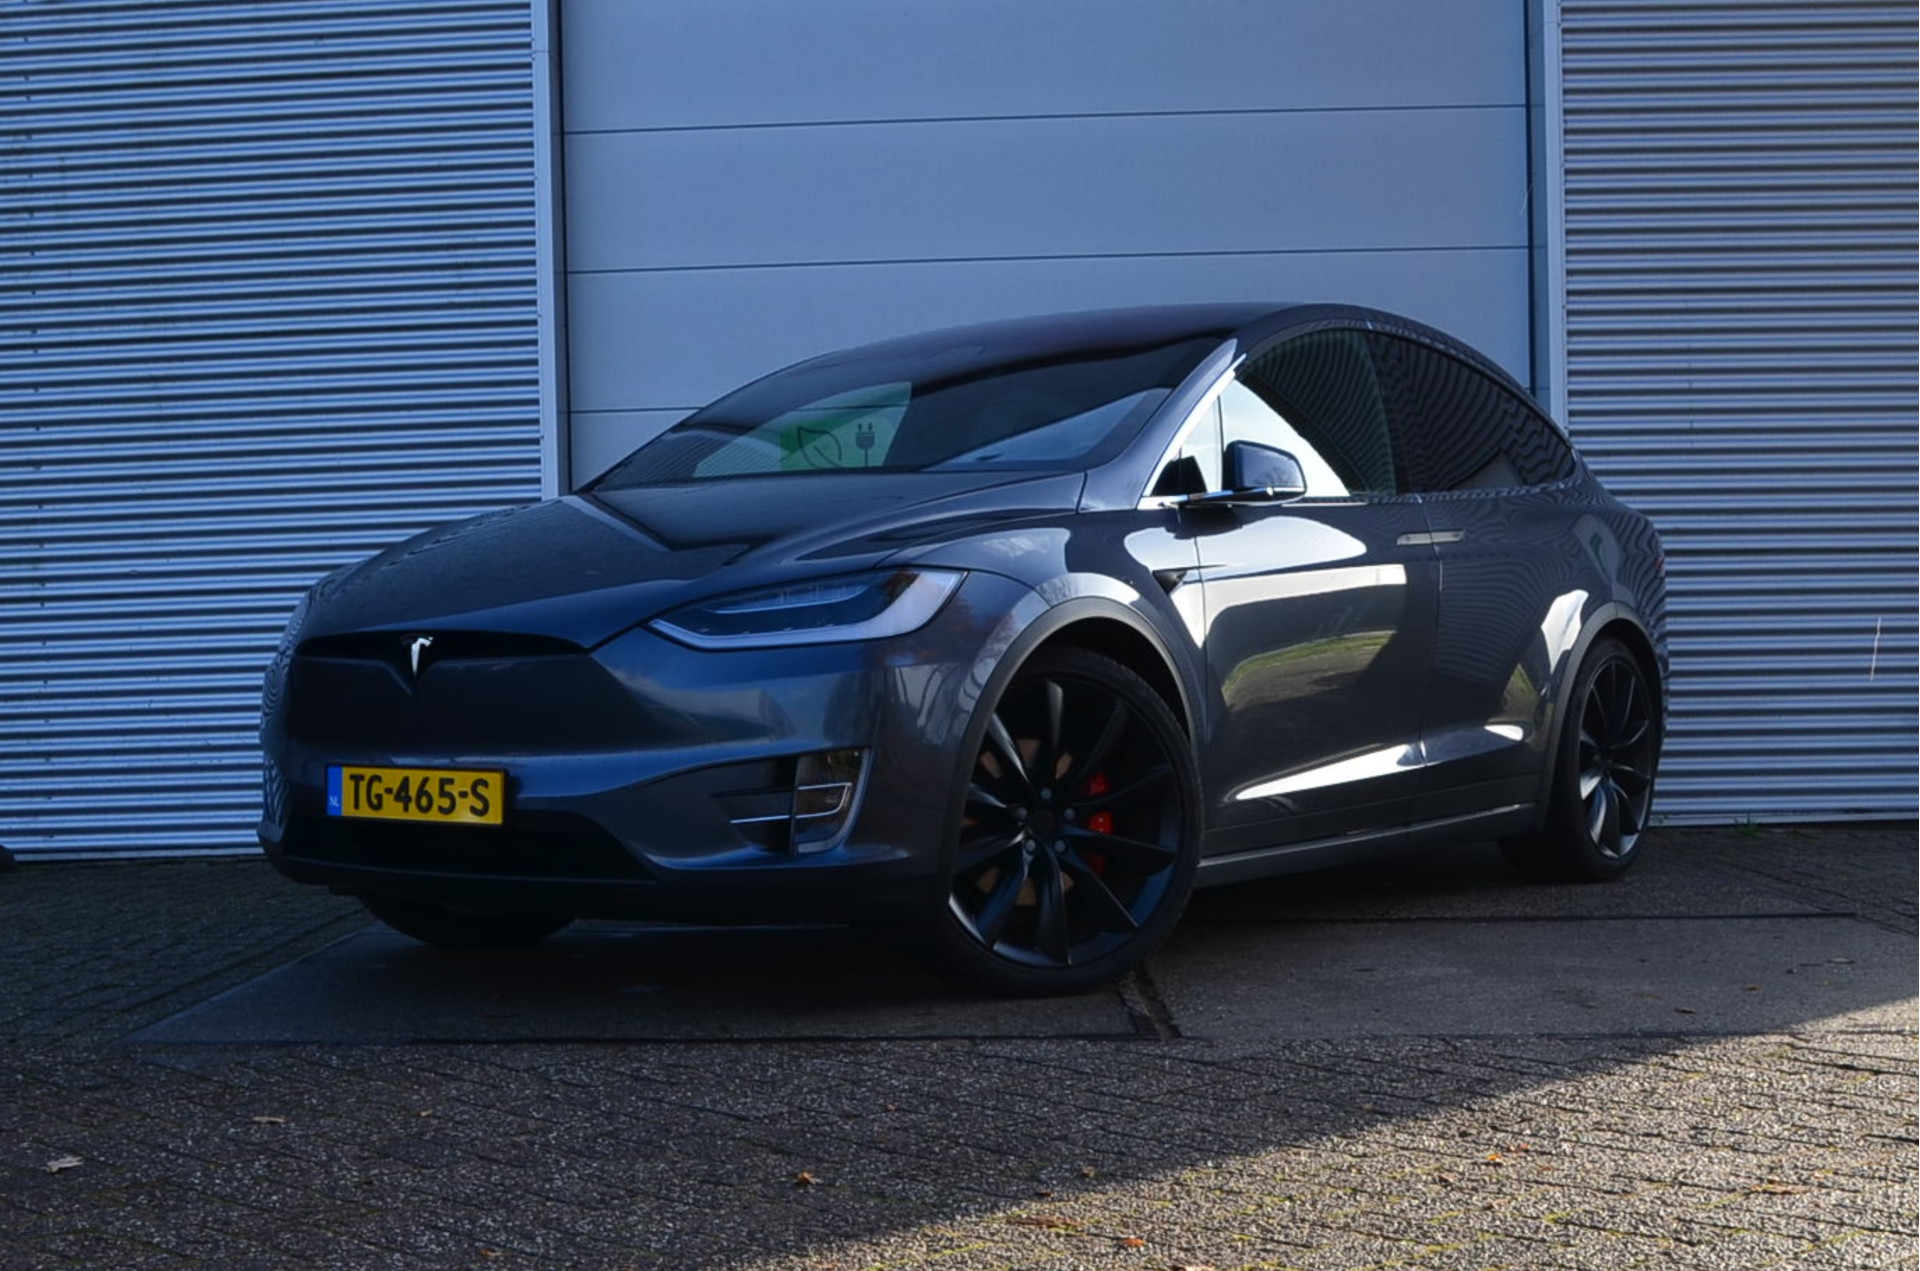 Tesla Model X 100D Performance 6p. Ludicrous+, AutoPilot2.5, MARGE rijklaar prijs bij viaBOVAG.nl